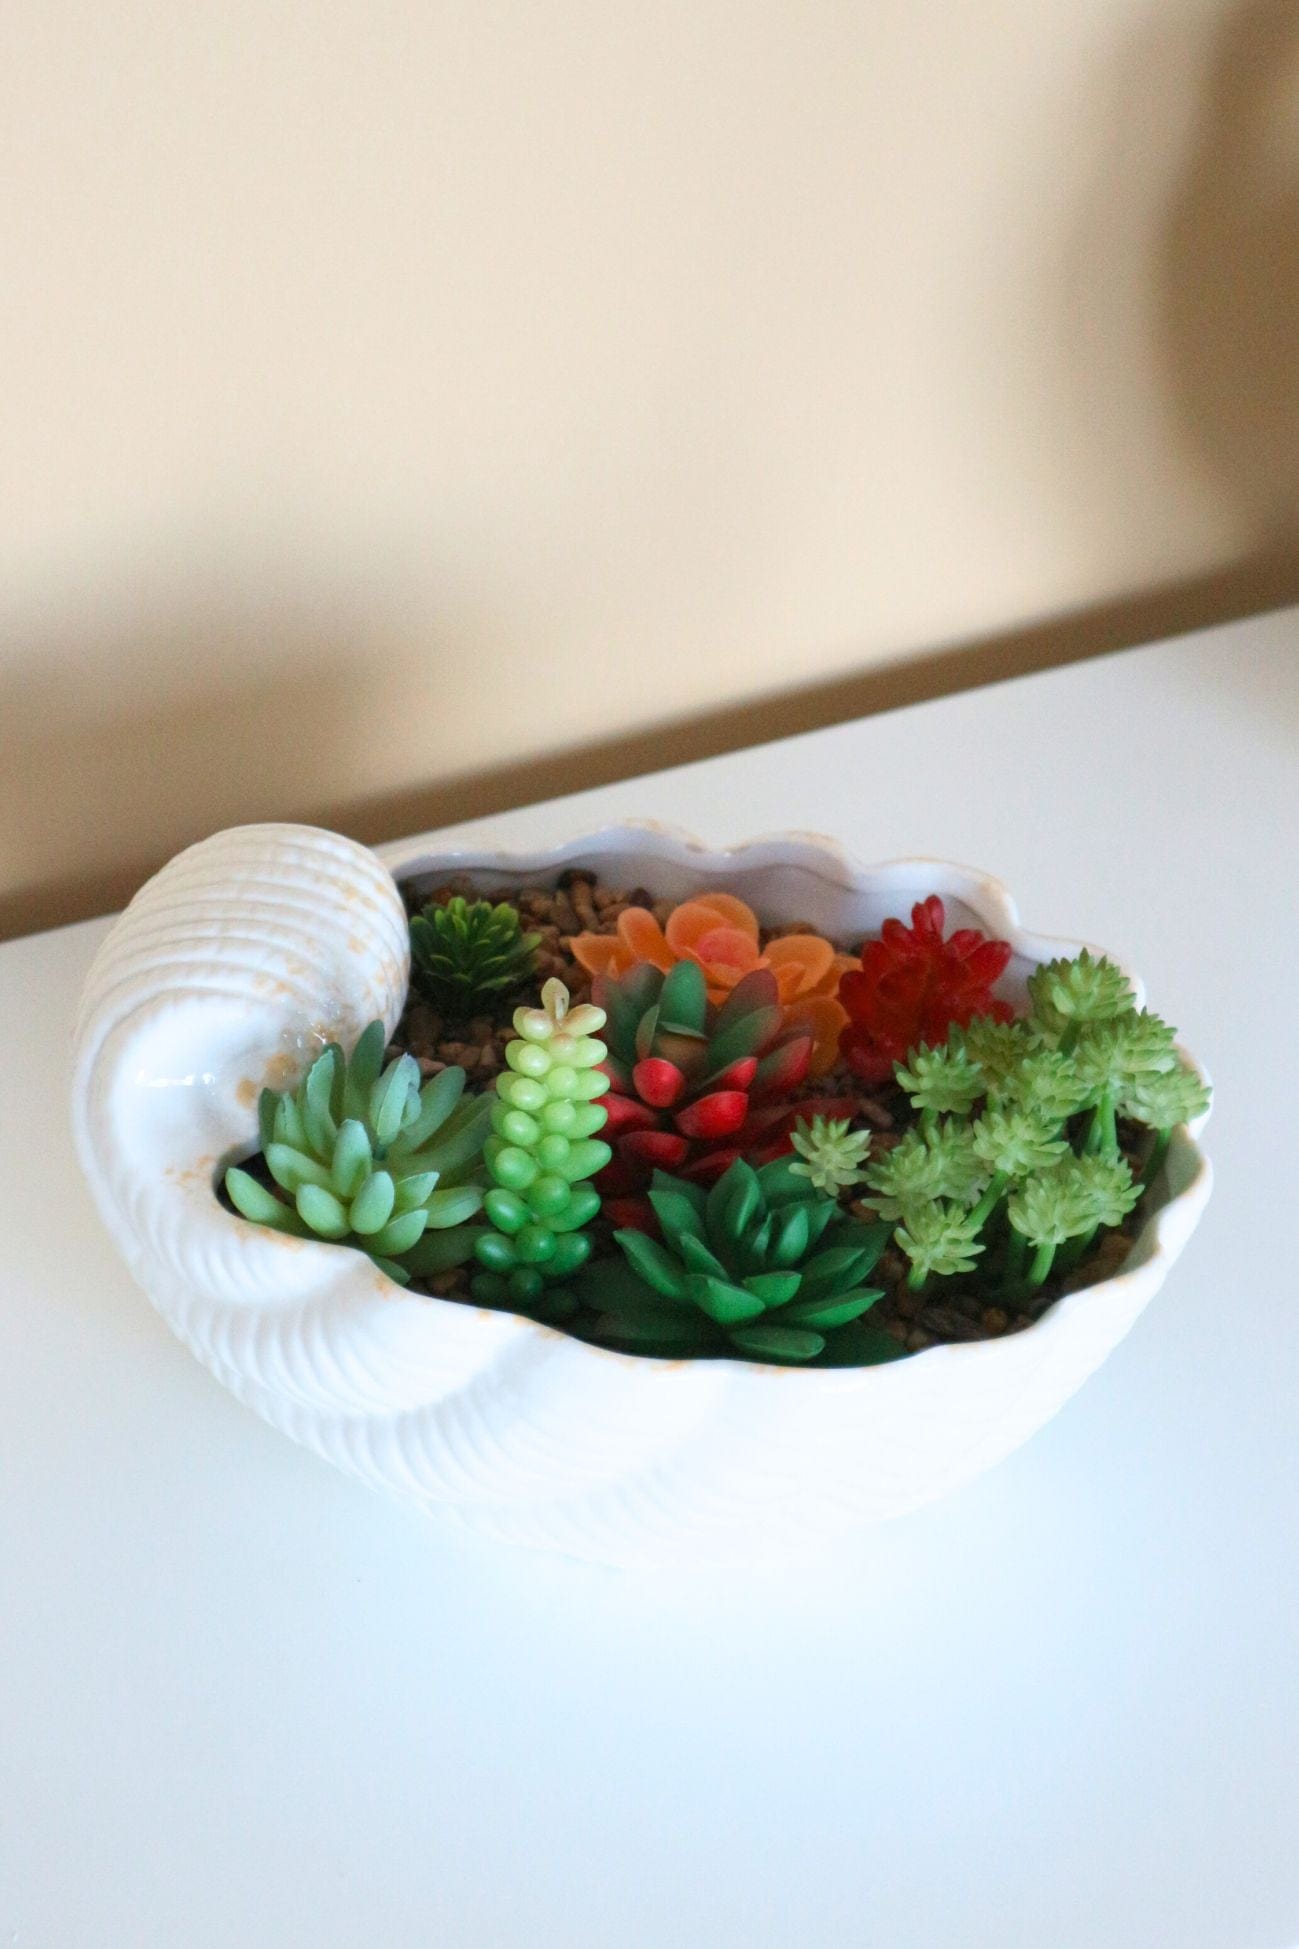 Item International Skal Skal - Piantina artificiale con vaso in ceramica a forma di conchiglia | Item International